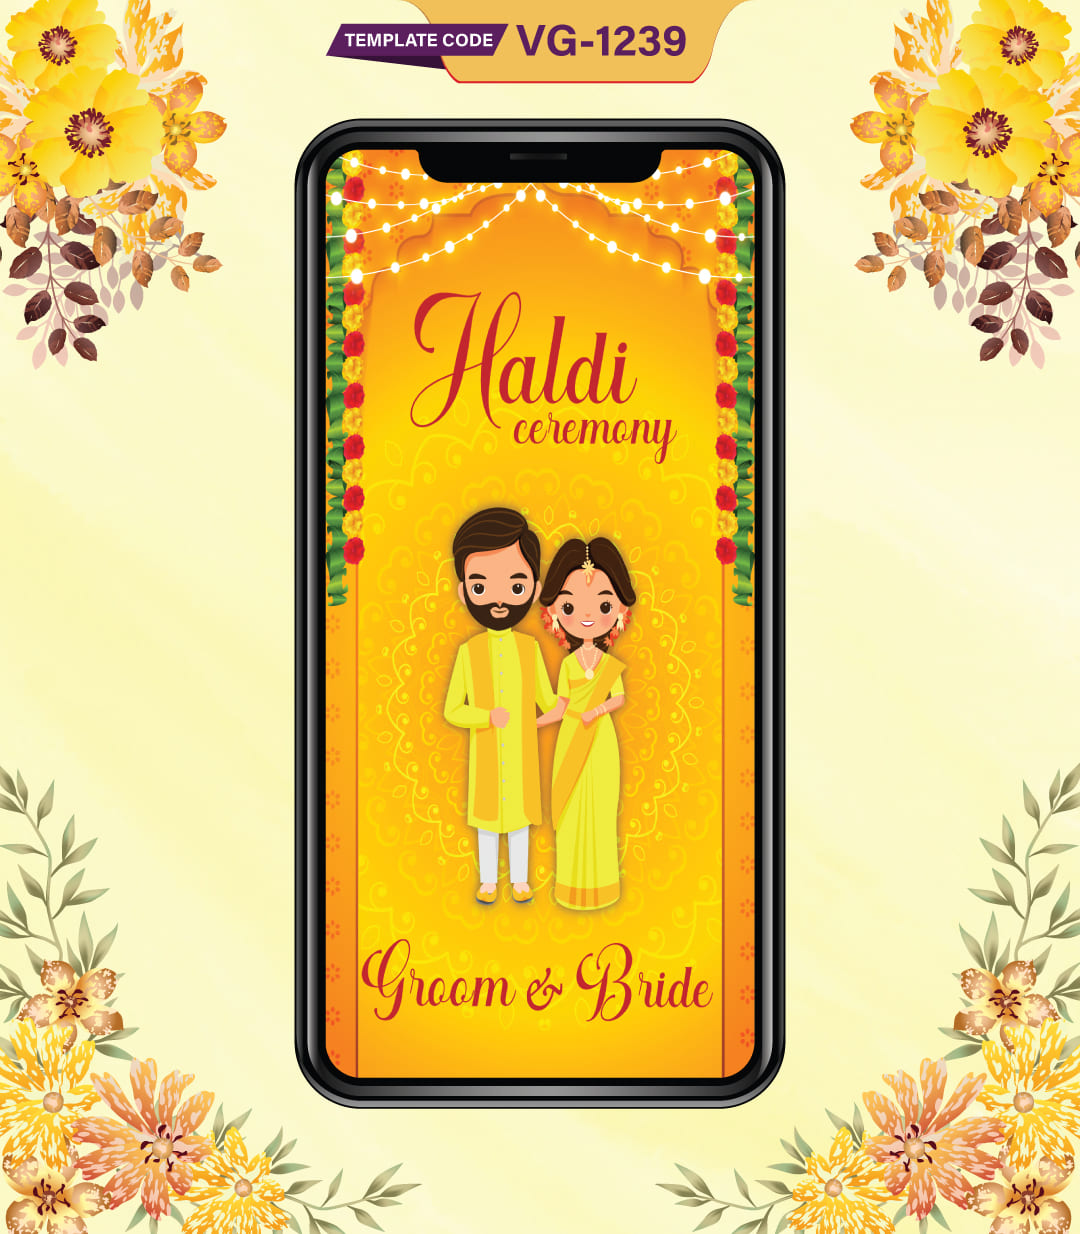 Cartoon Haldi Ceremony Invitation Card - Haldi Ceremony Invitation eCard